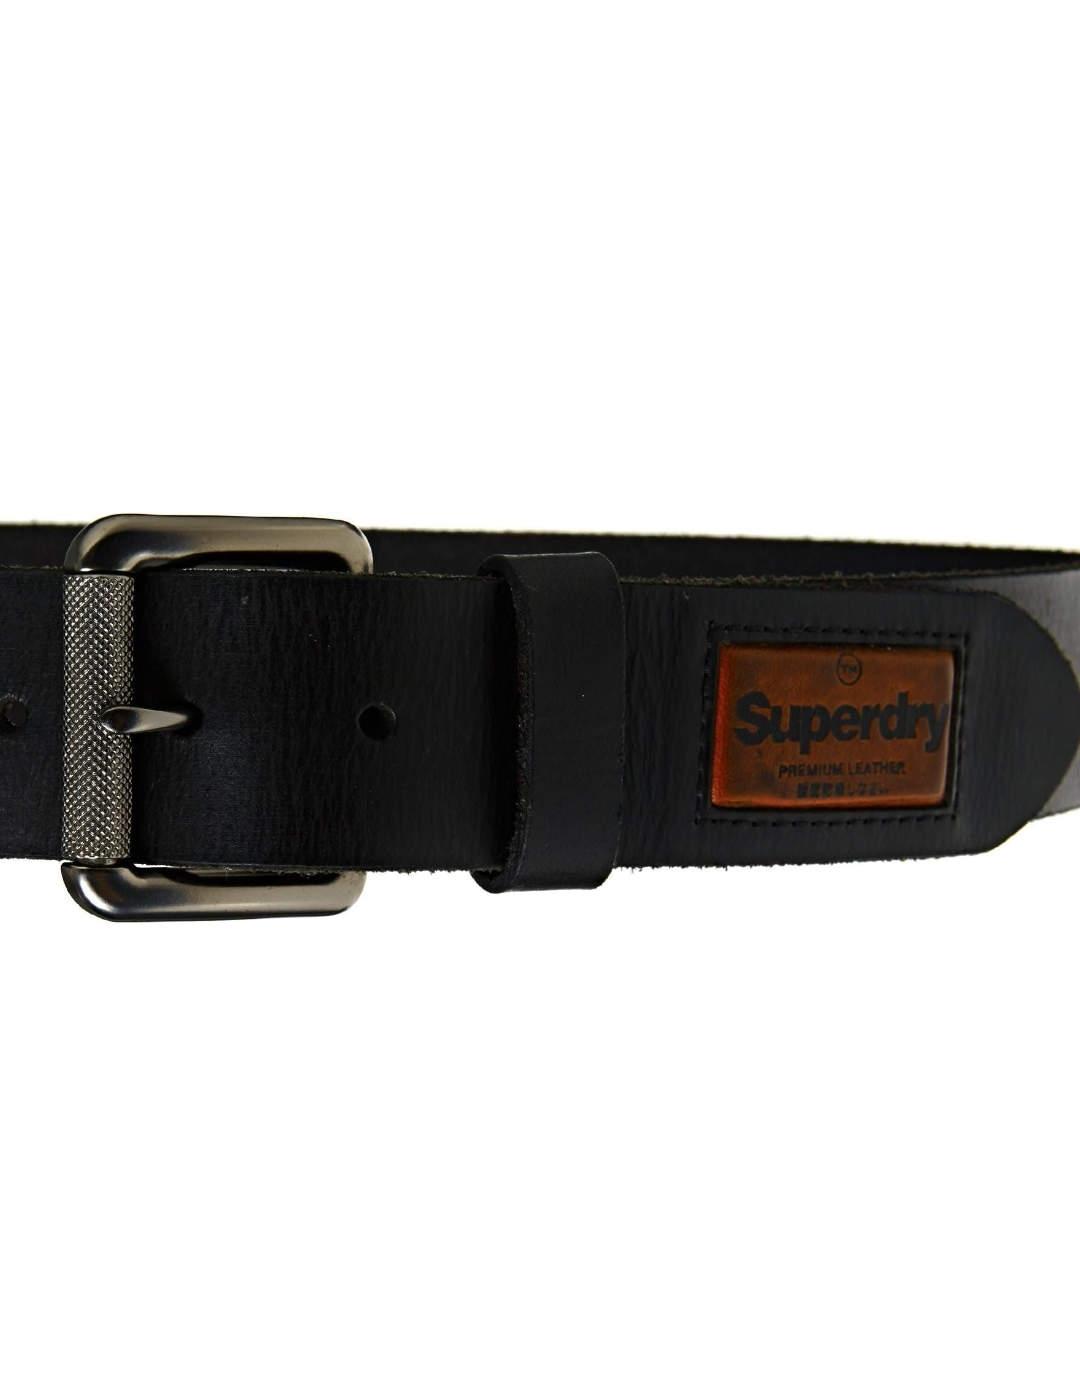 Cinturón Superdry de piel negro con hebilla para hombre